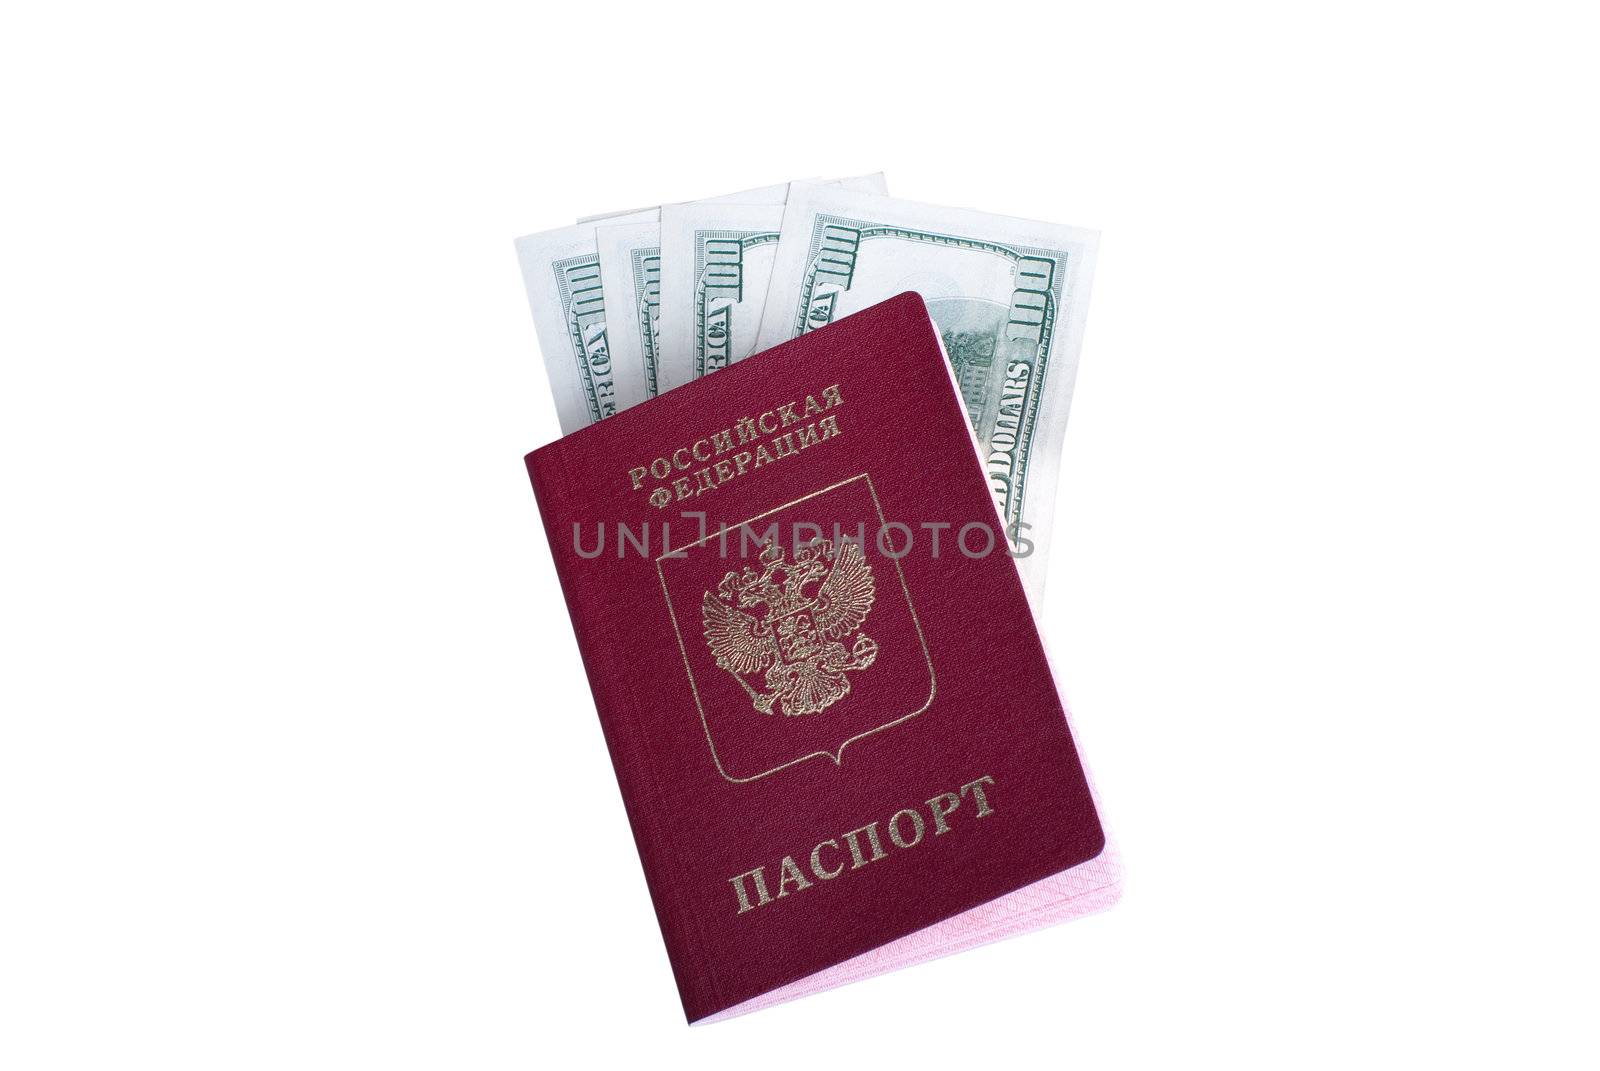 The passport and dollars by kromeshnik